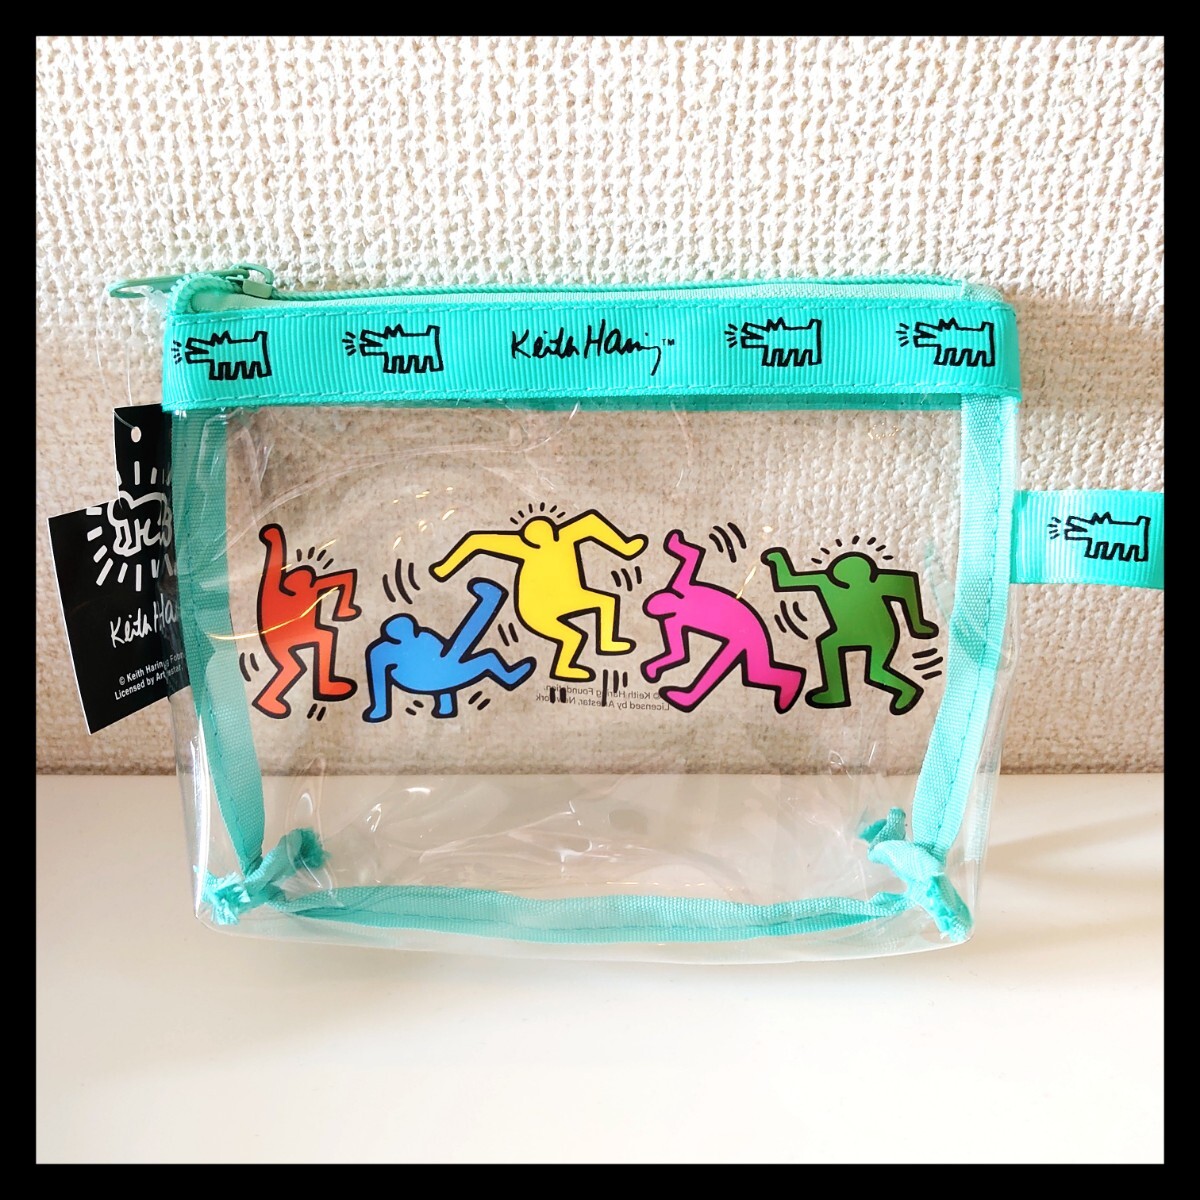 新品 未使用 Keith Haring キースヘリング クリア 台形 ポーチ 小物入れ ユニセックス 旅行 メイクポーチ bag ビニールクラッチバッグ の画像2